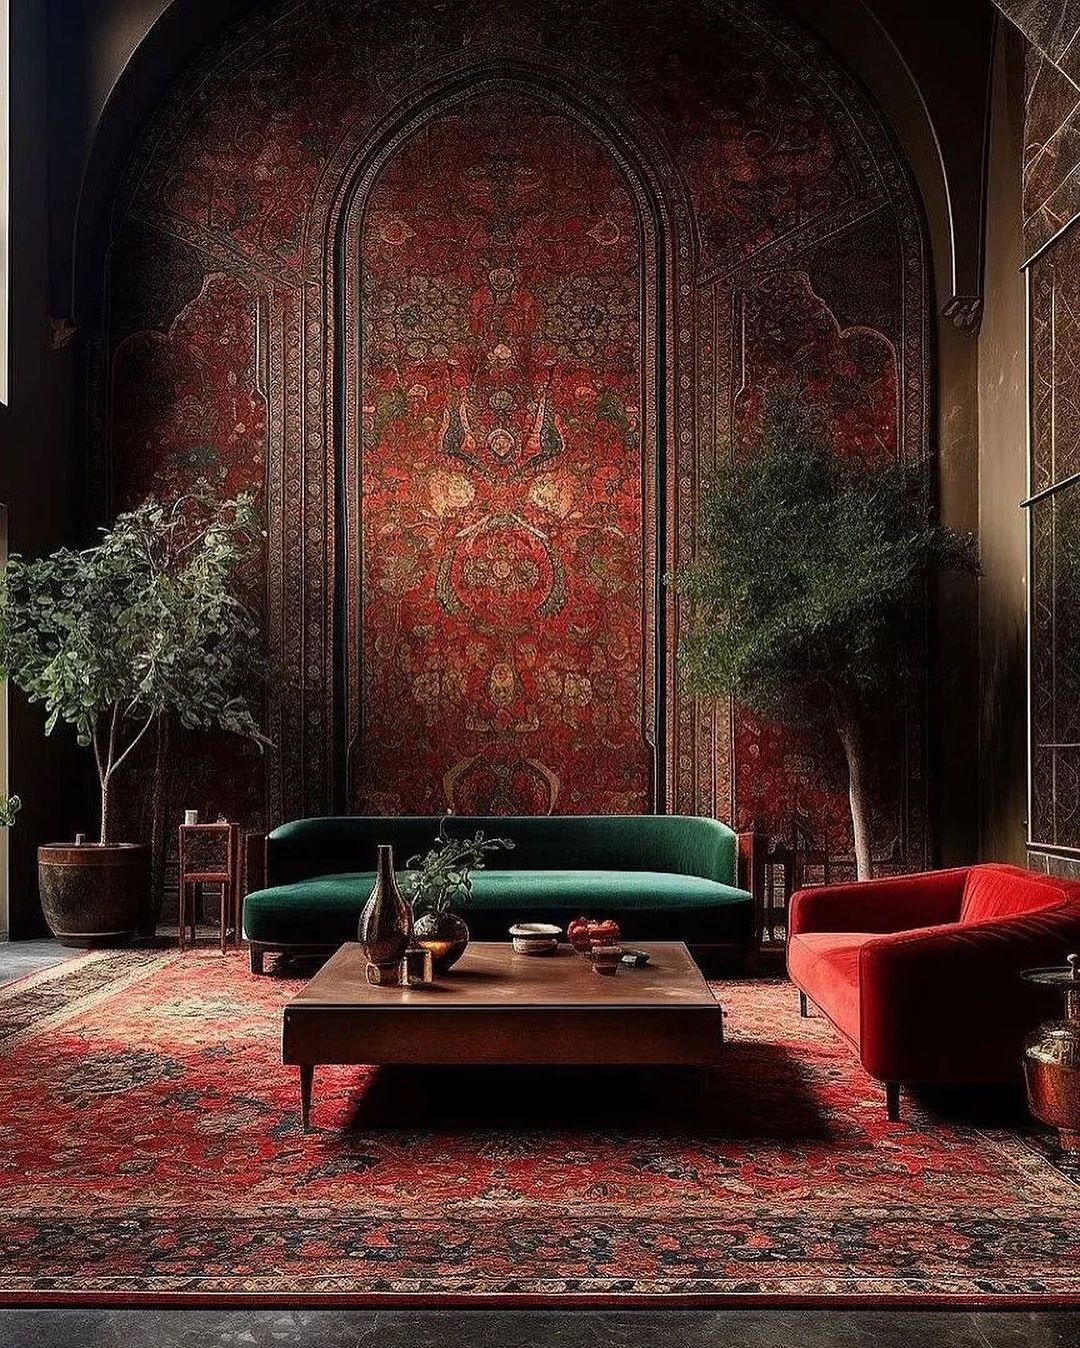 یکی از زیباترین خروجی های هوش مصنوعی به خاطر فرش ایرانی (عکس)